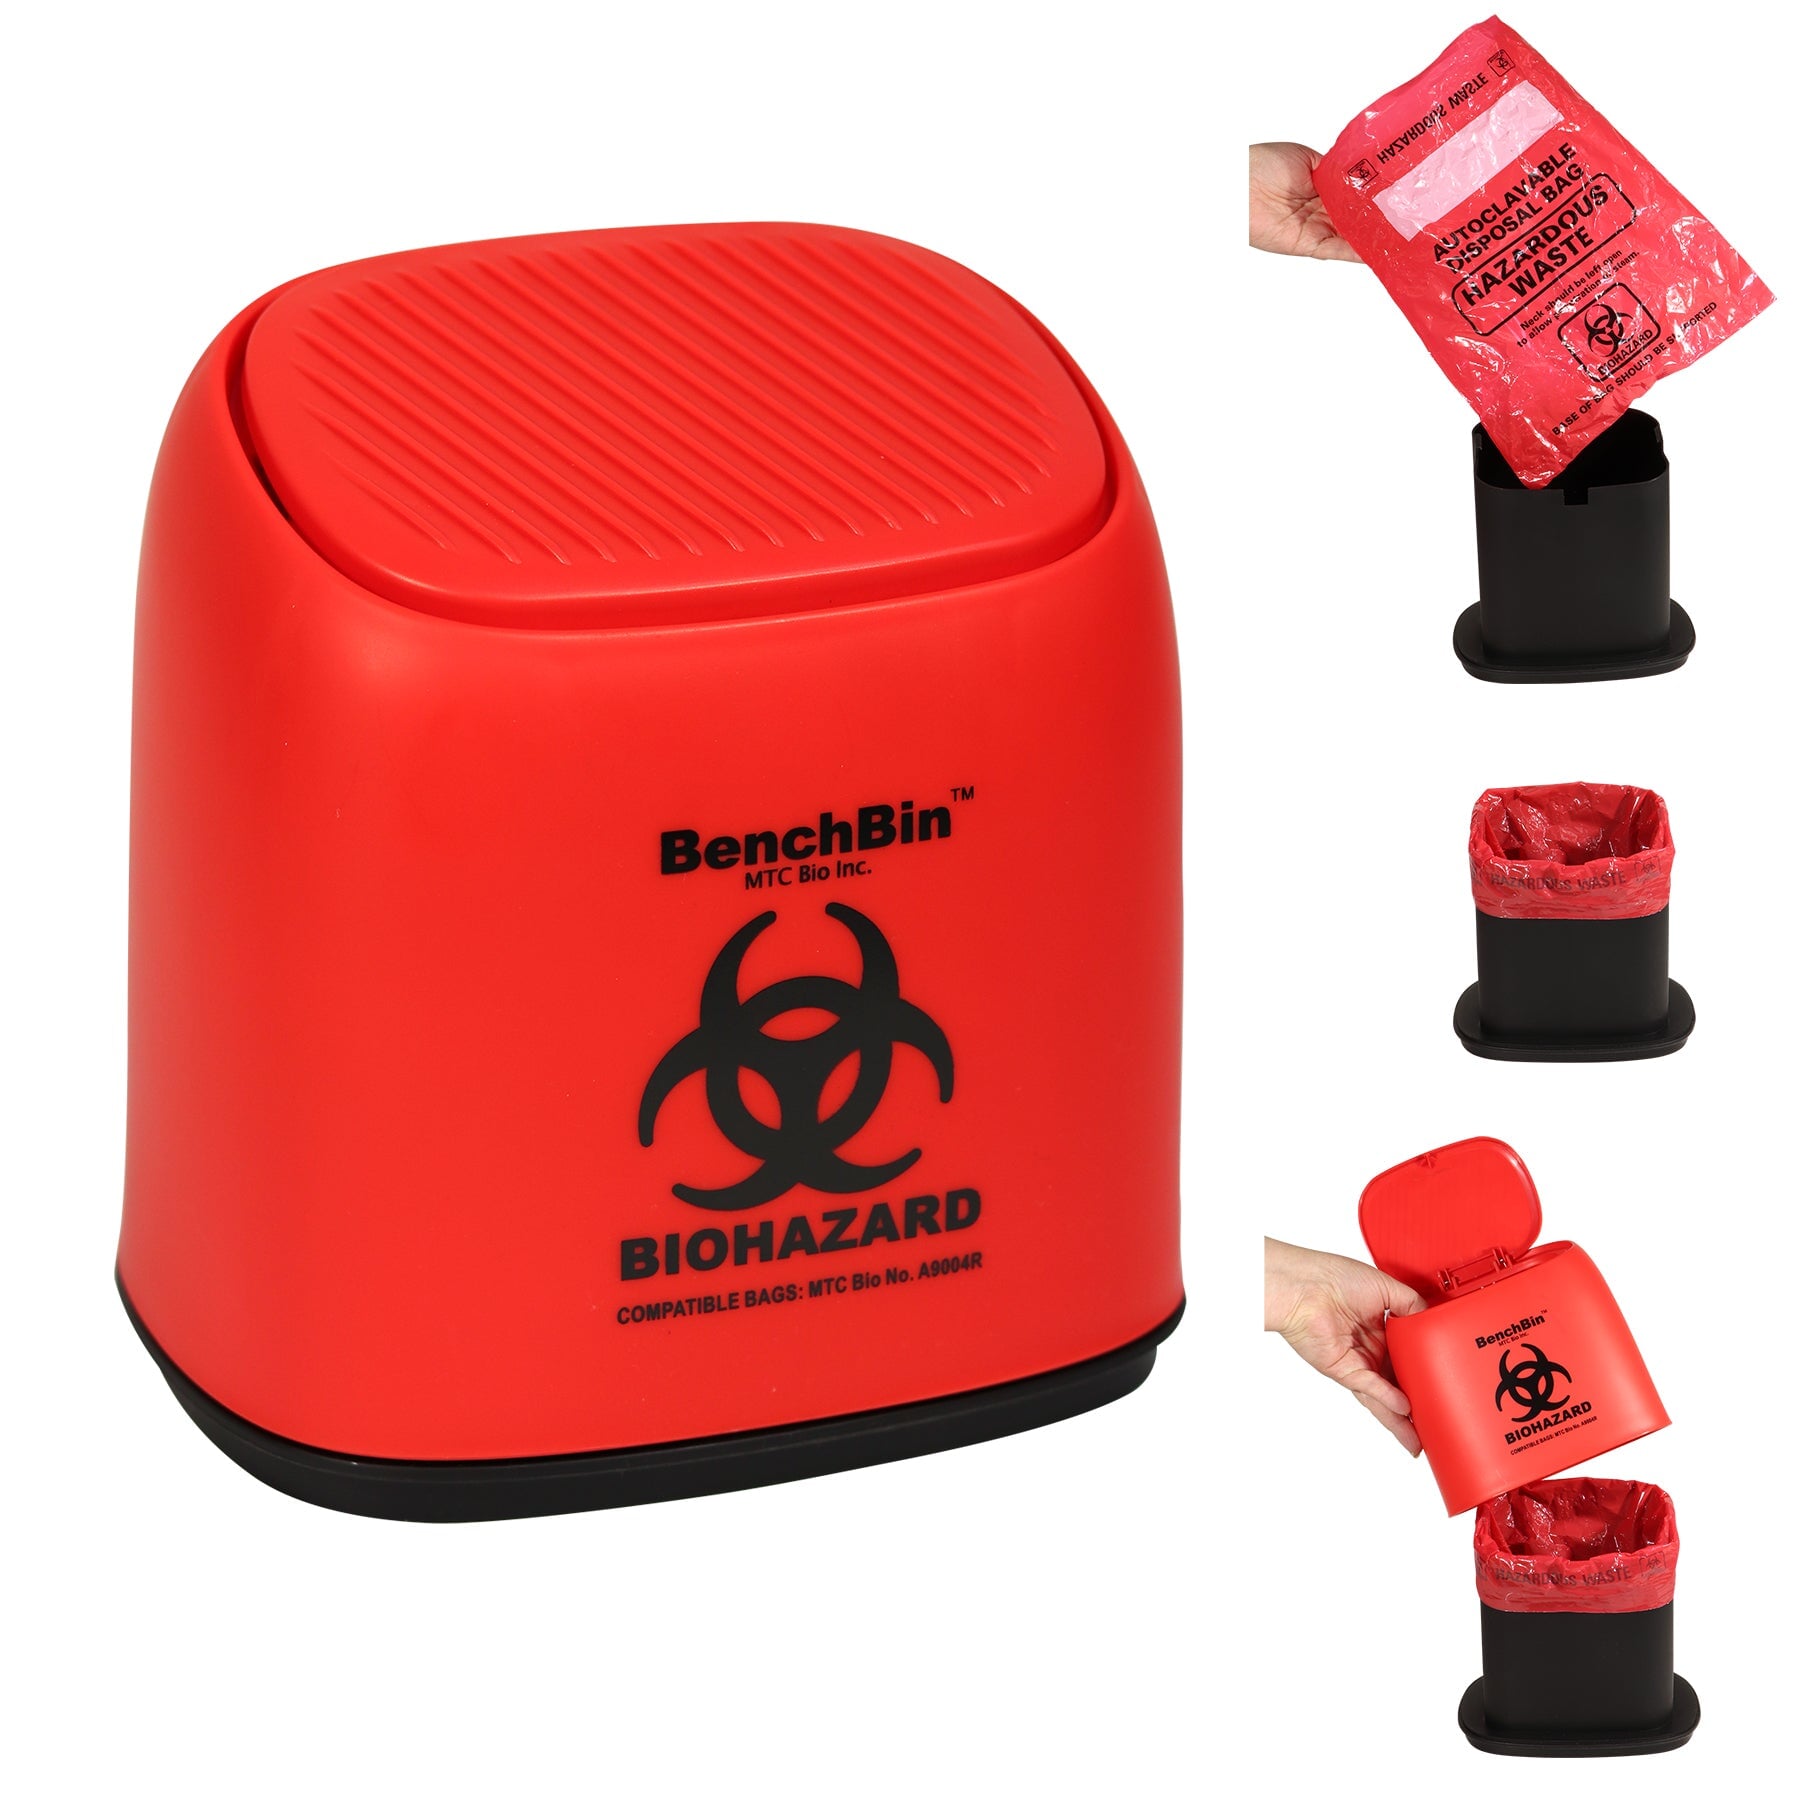 MTC Bio A8401B BenchBin™ Benchtop Biohazard Bin